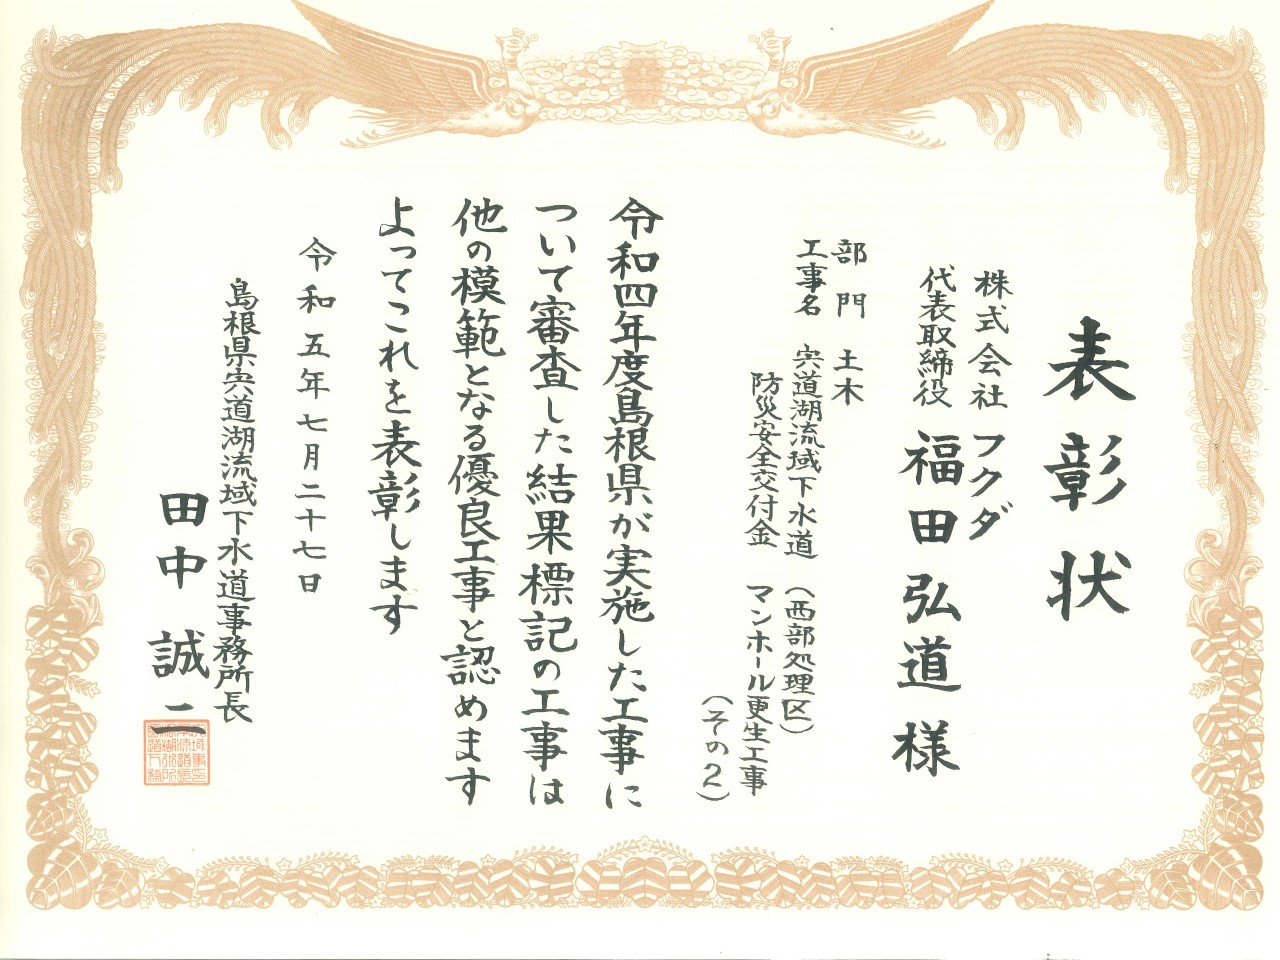 宍道湖流域下水道事務所長表彰をいただきました。